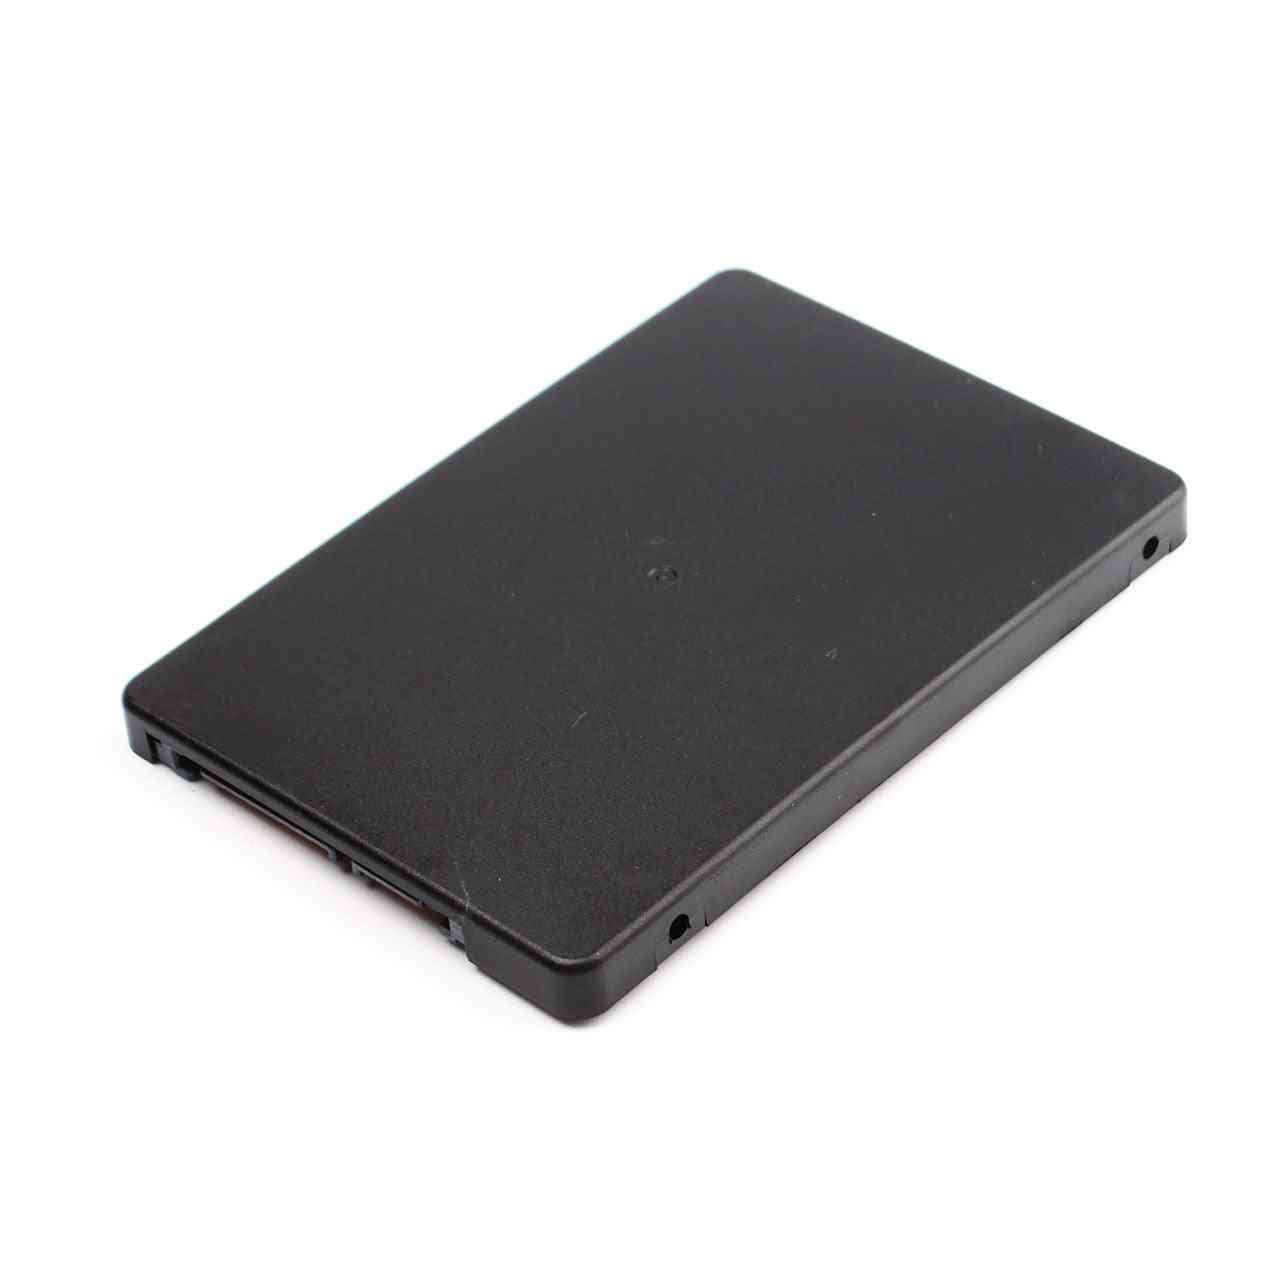 B + m nøglestik, 2 m.2 ngff (sata) - SSD til 2,5 sata adapterkort med etui -